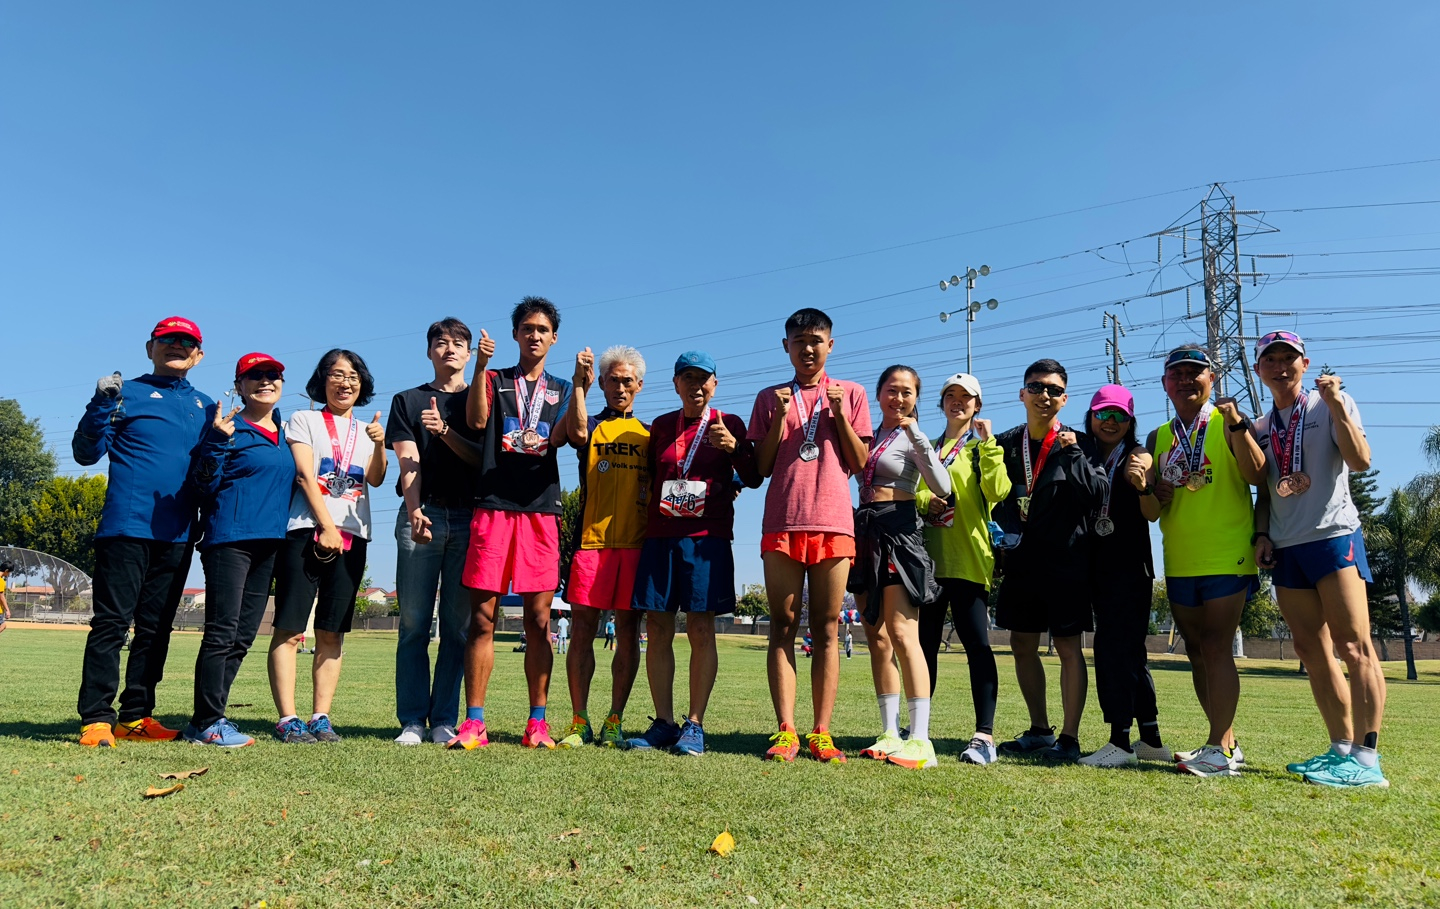 해피러너스(회장 송두석) 회원들이 최근 라팔마 시 개최로 센트럴 공원에서 열린 ‘제41회 연례 피트니스 런 포 펀(Fitness Run4Fun)’ 행사에 참가했다. 회원들은 5K 걷기와 달리기, 10K 달리기 대회에 출전했다. 지난 4일 대회 직후, 회원들이 한자리에 모였다. [해피러너스 제공]